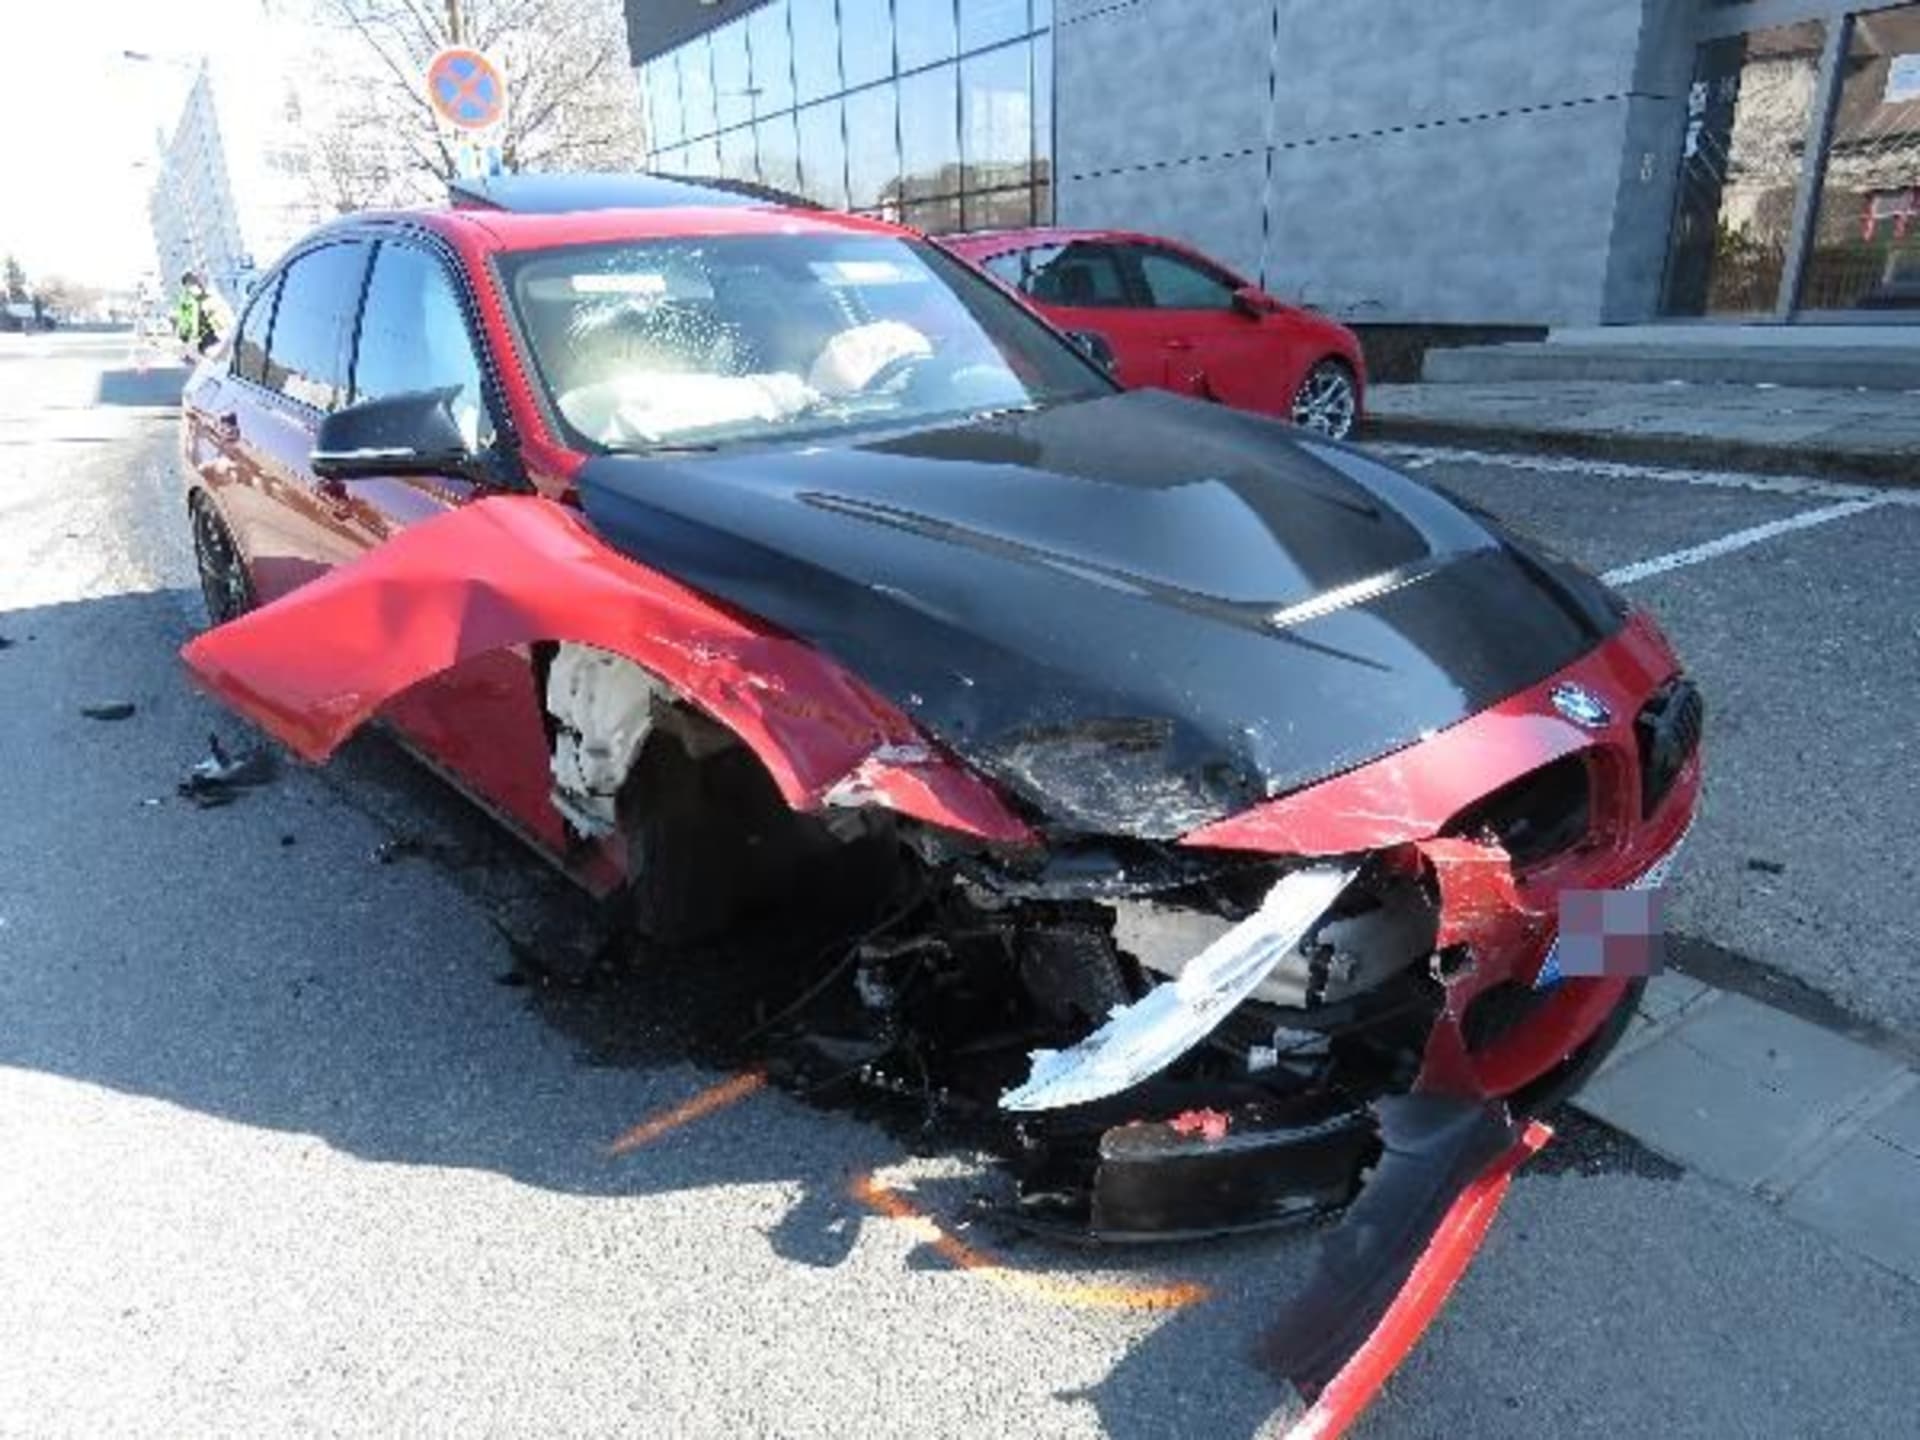 Hromadnou nehodu podle prvotních informací zavinil dvacetiletý řidič BMW.